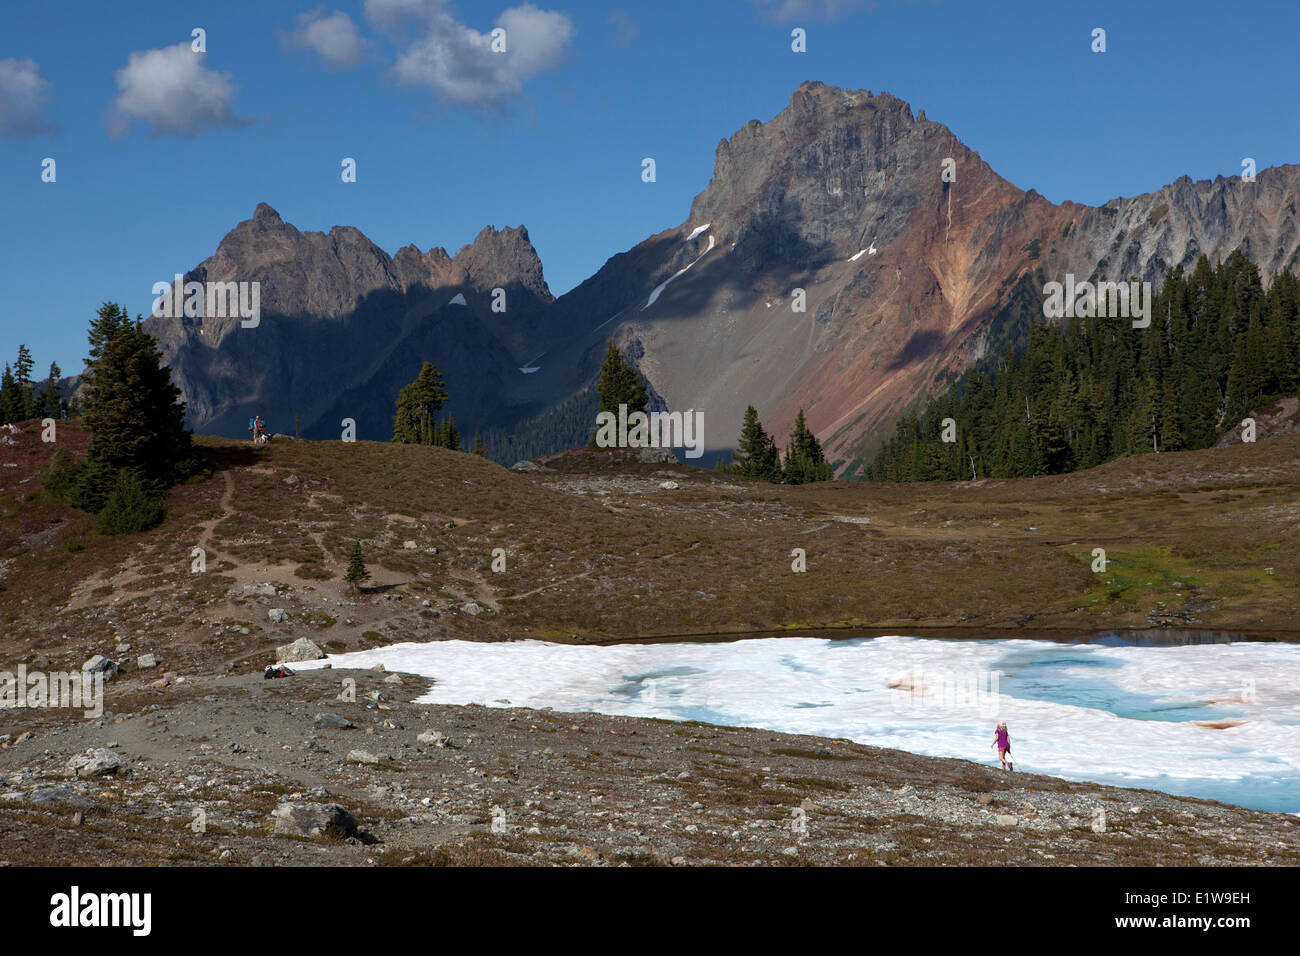 Jeune fille randonnées vers les crêtes de la frontière américaine et canadienne, la chambre jaune Butte Trail, le mont Baker Wilderness, l'État de Washington Banque D'Images